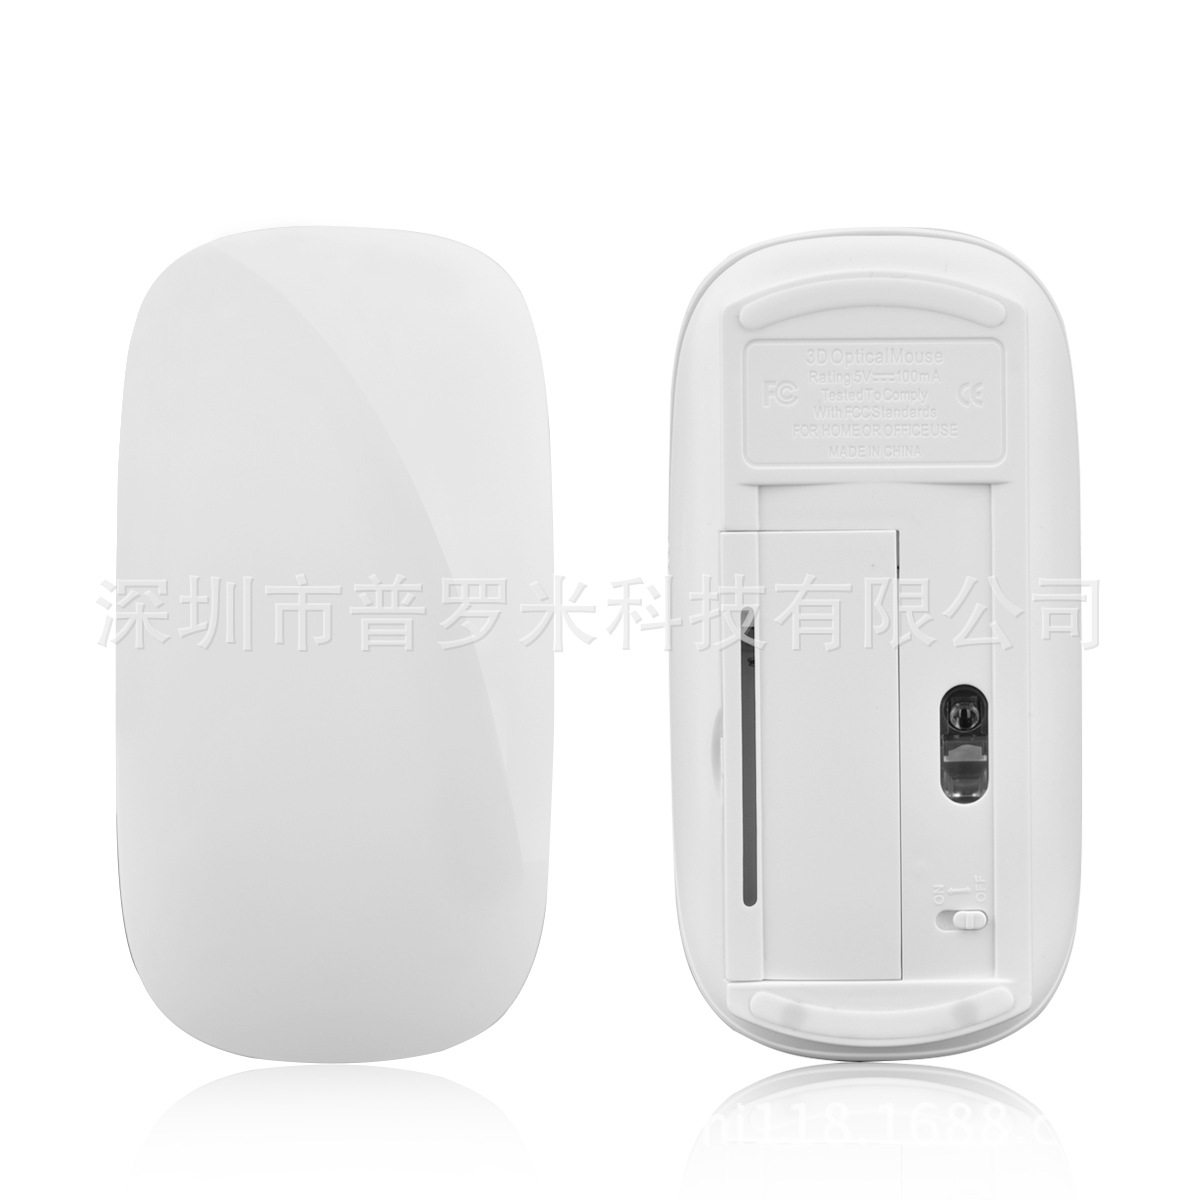 MF-823 新款平板触摸鼠标 2.4G无线鼠标触摸鼠标超薄触控鼠标3